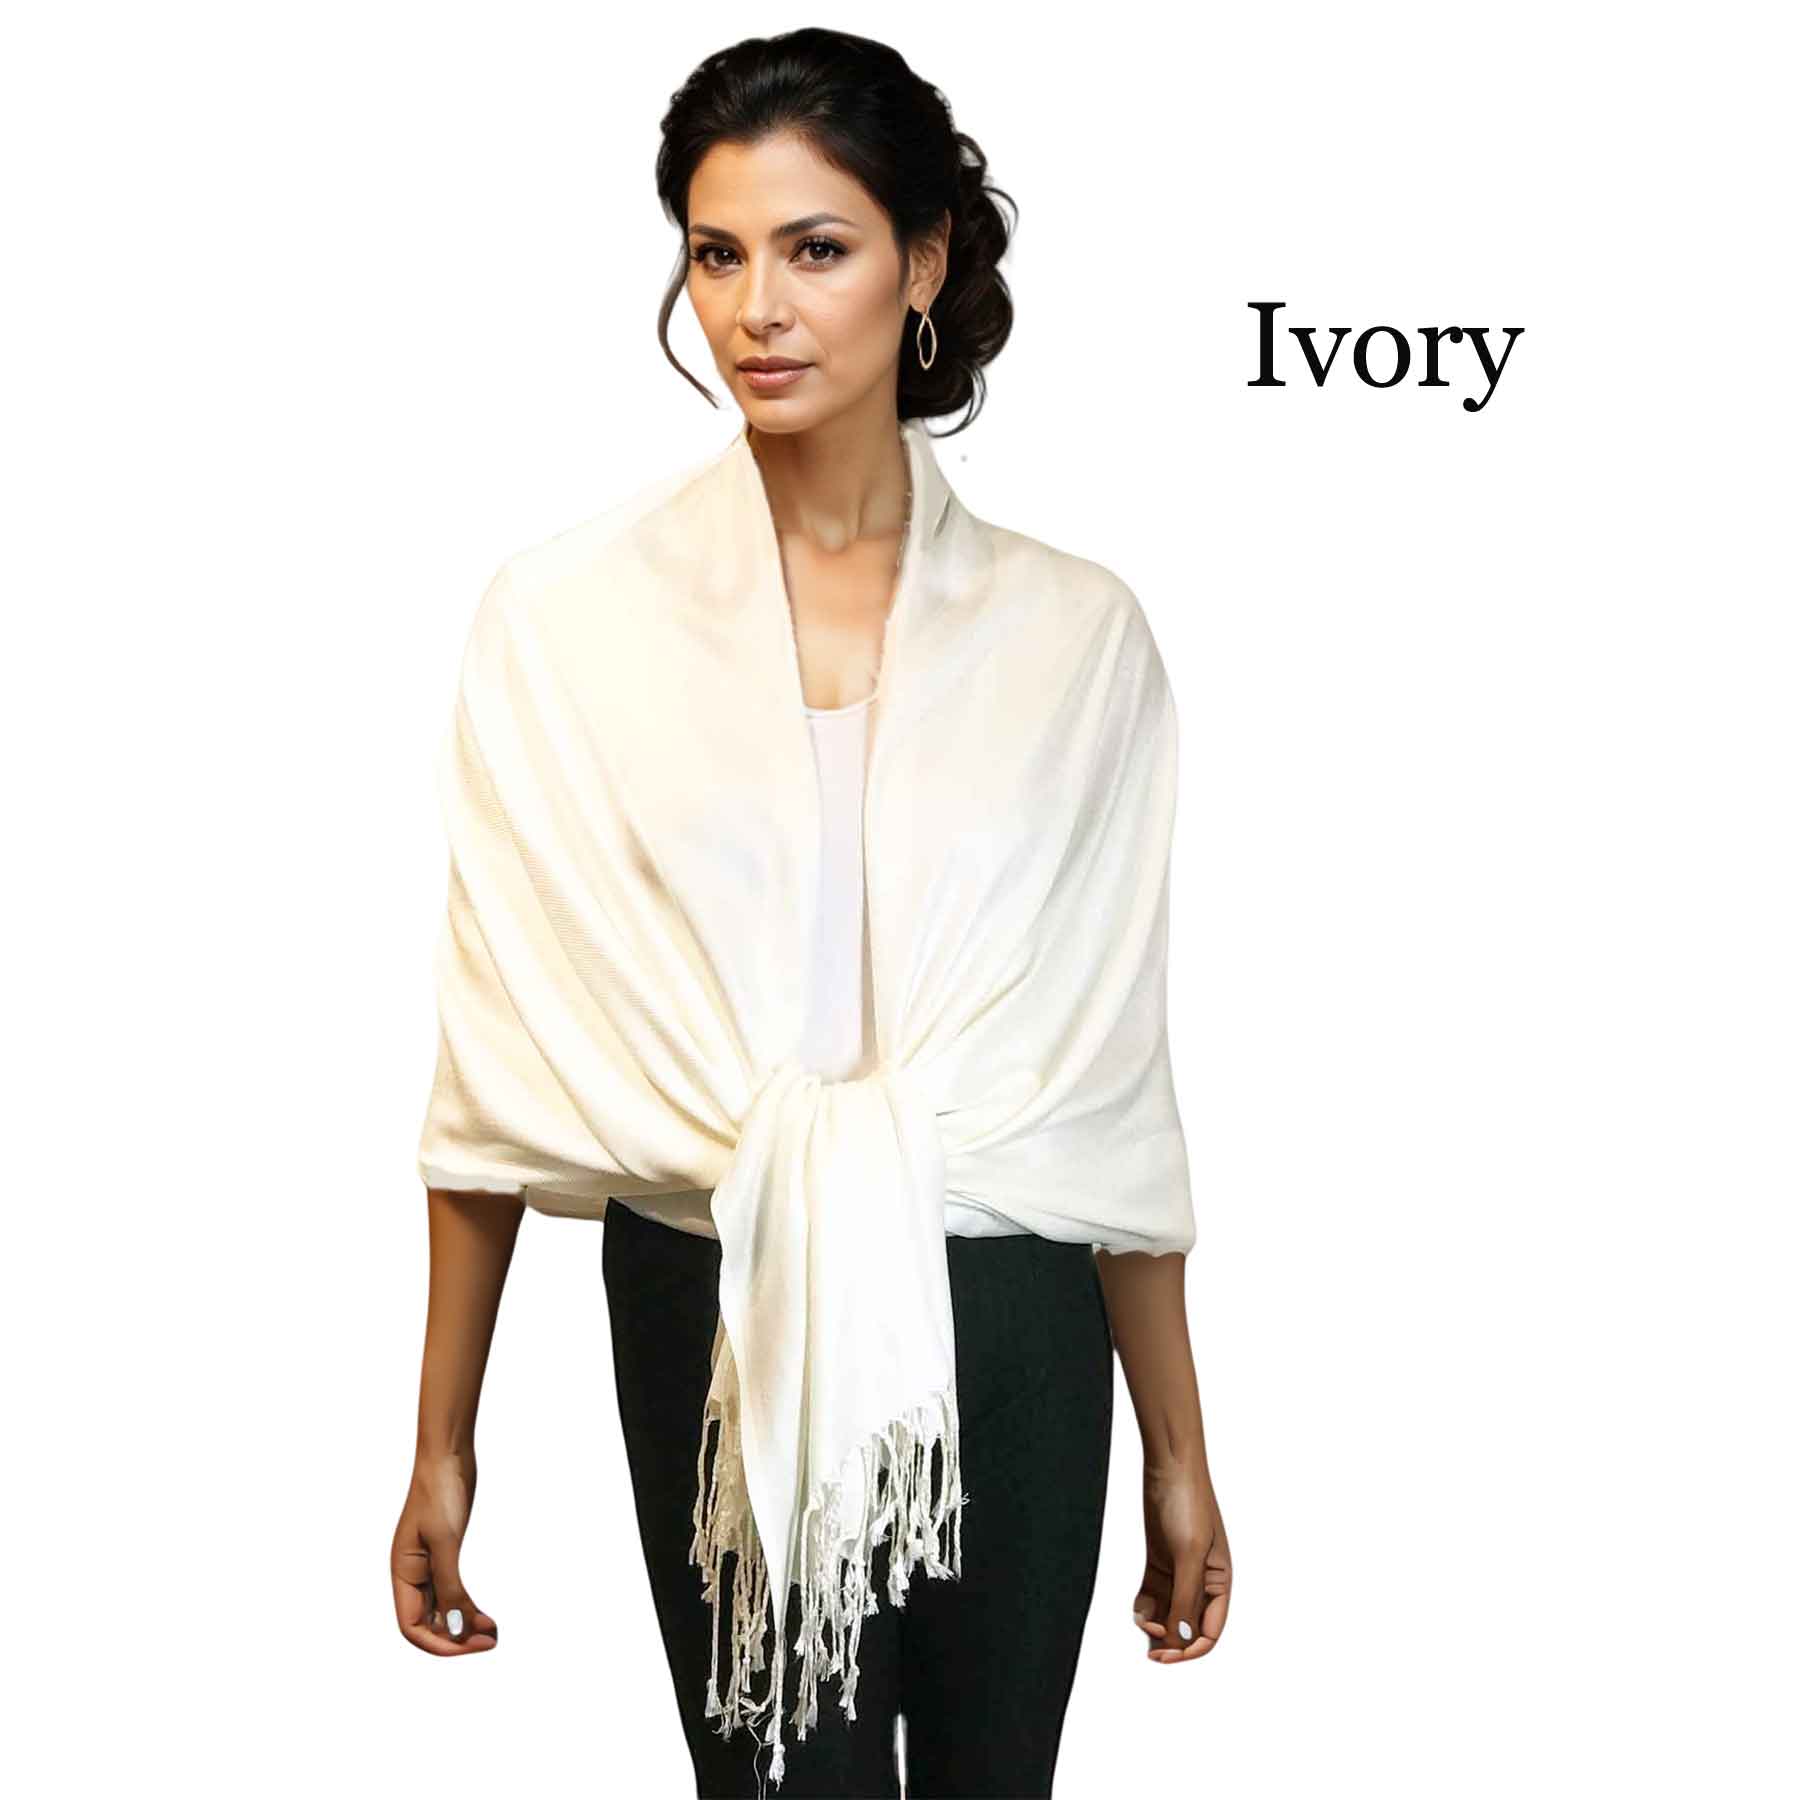 Ivory #02<br>
Pashmina Style Shawl